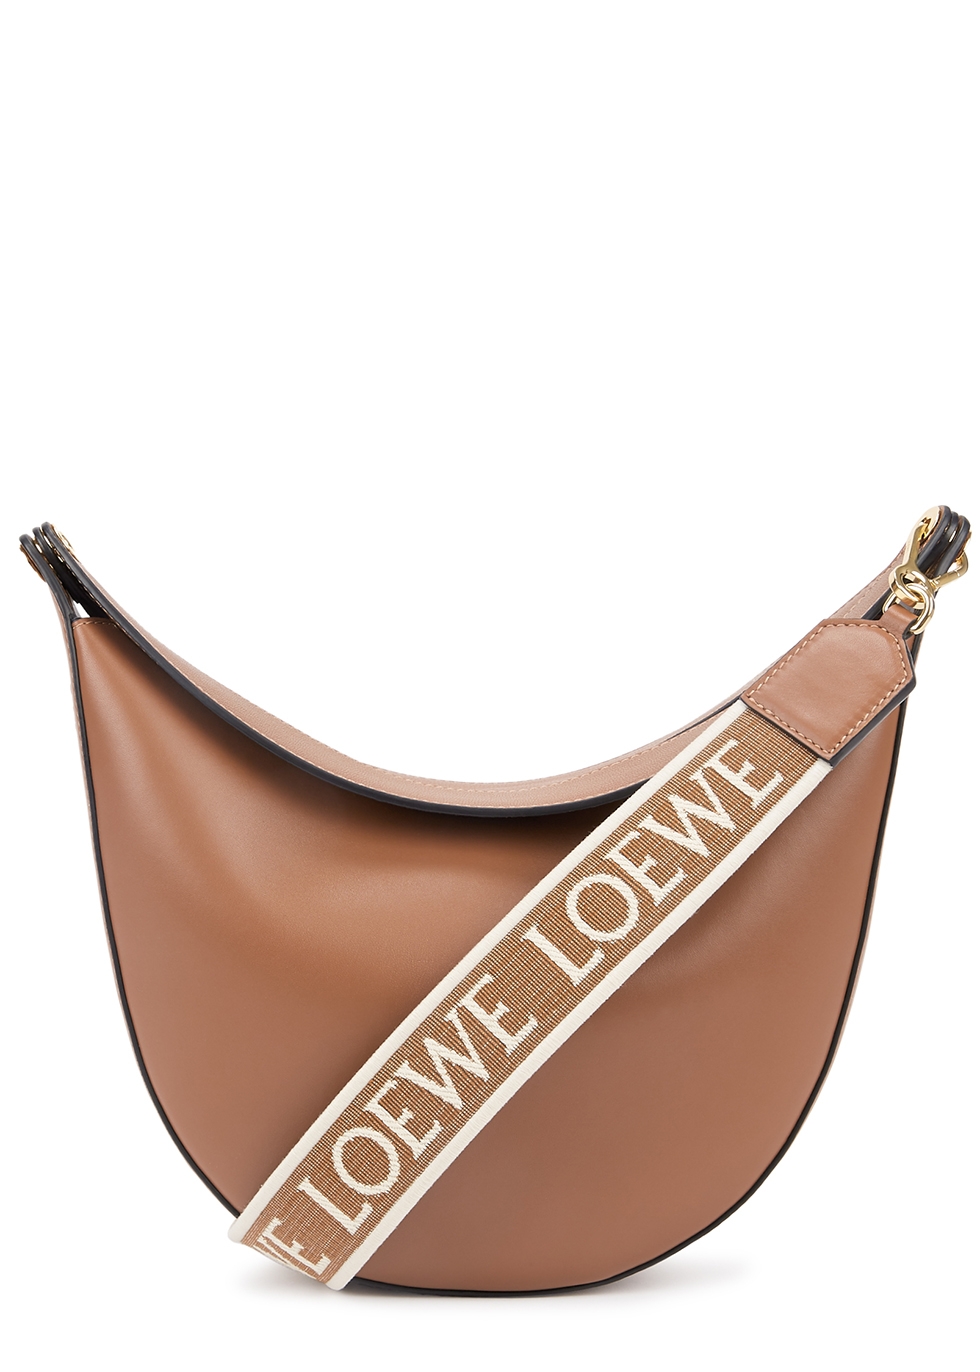 Loewe Women's Bags - Harvey Nichols